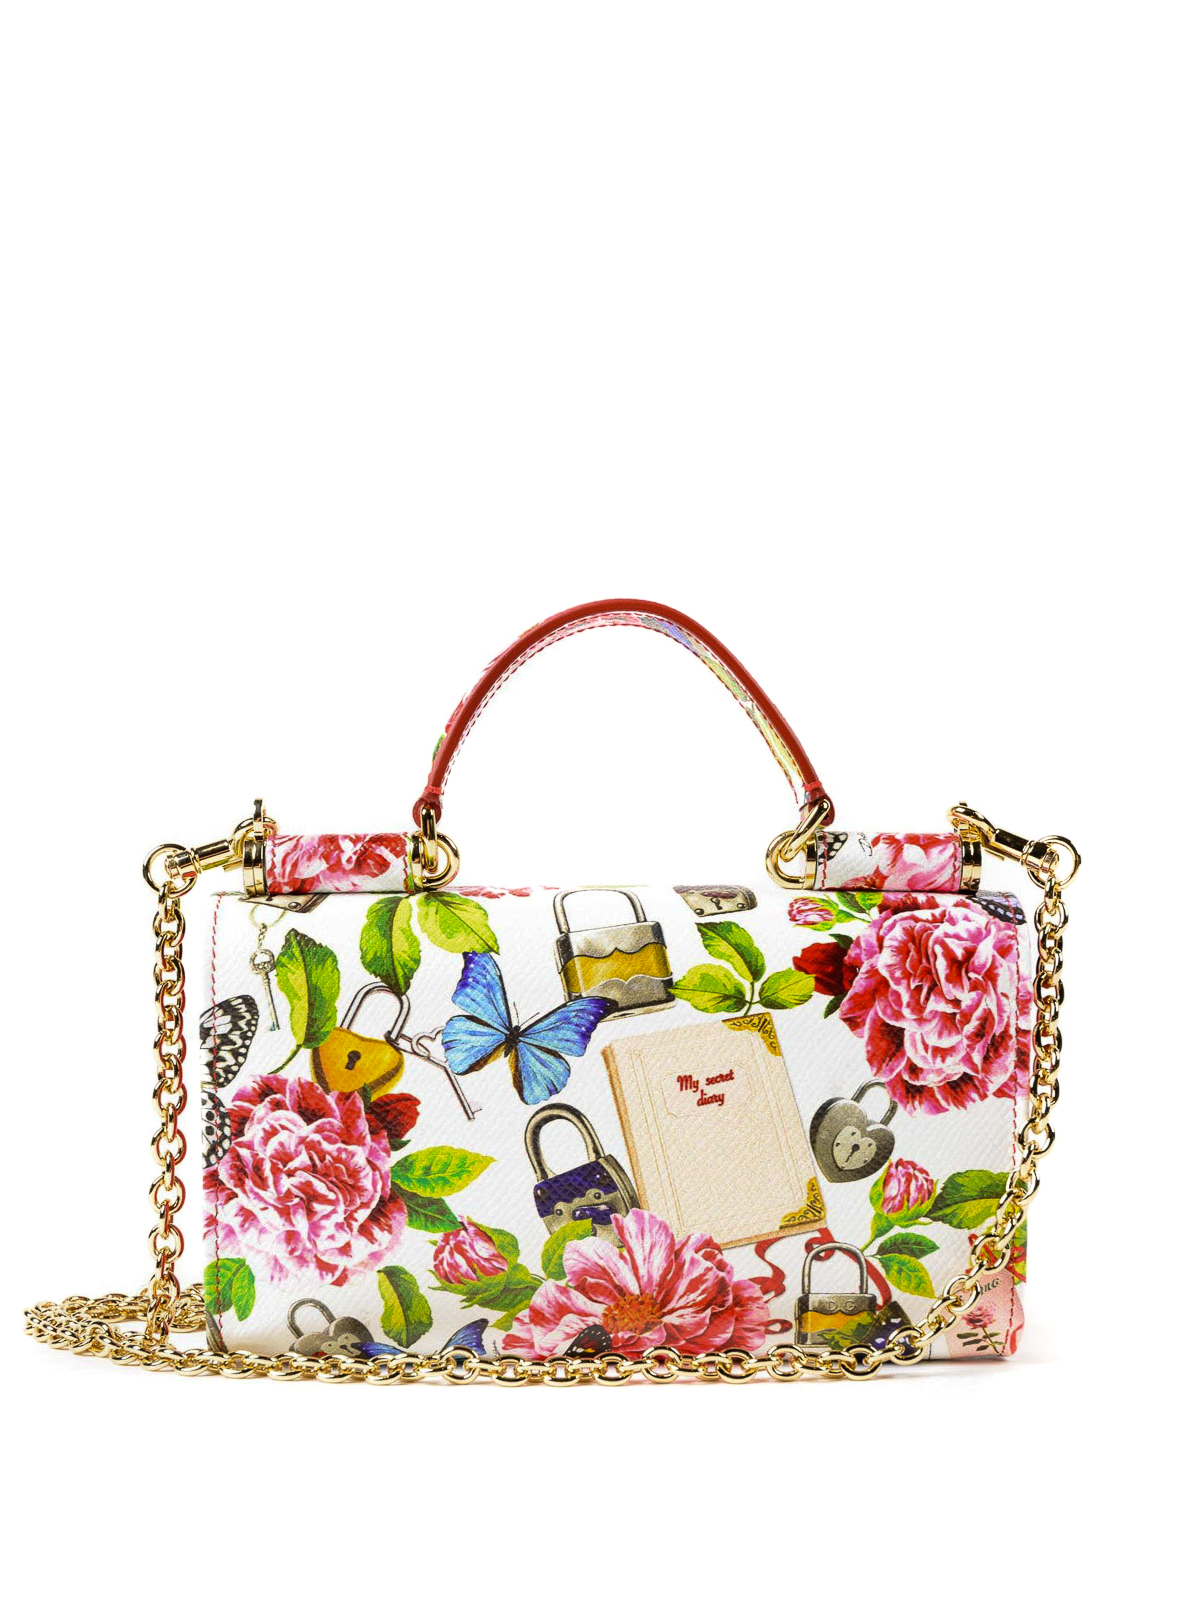 Dolce & Gabbana Sicily Von Hand Bag